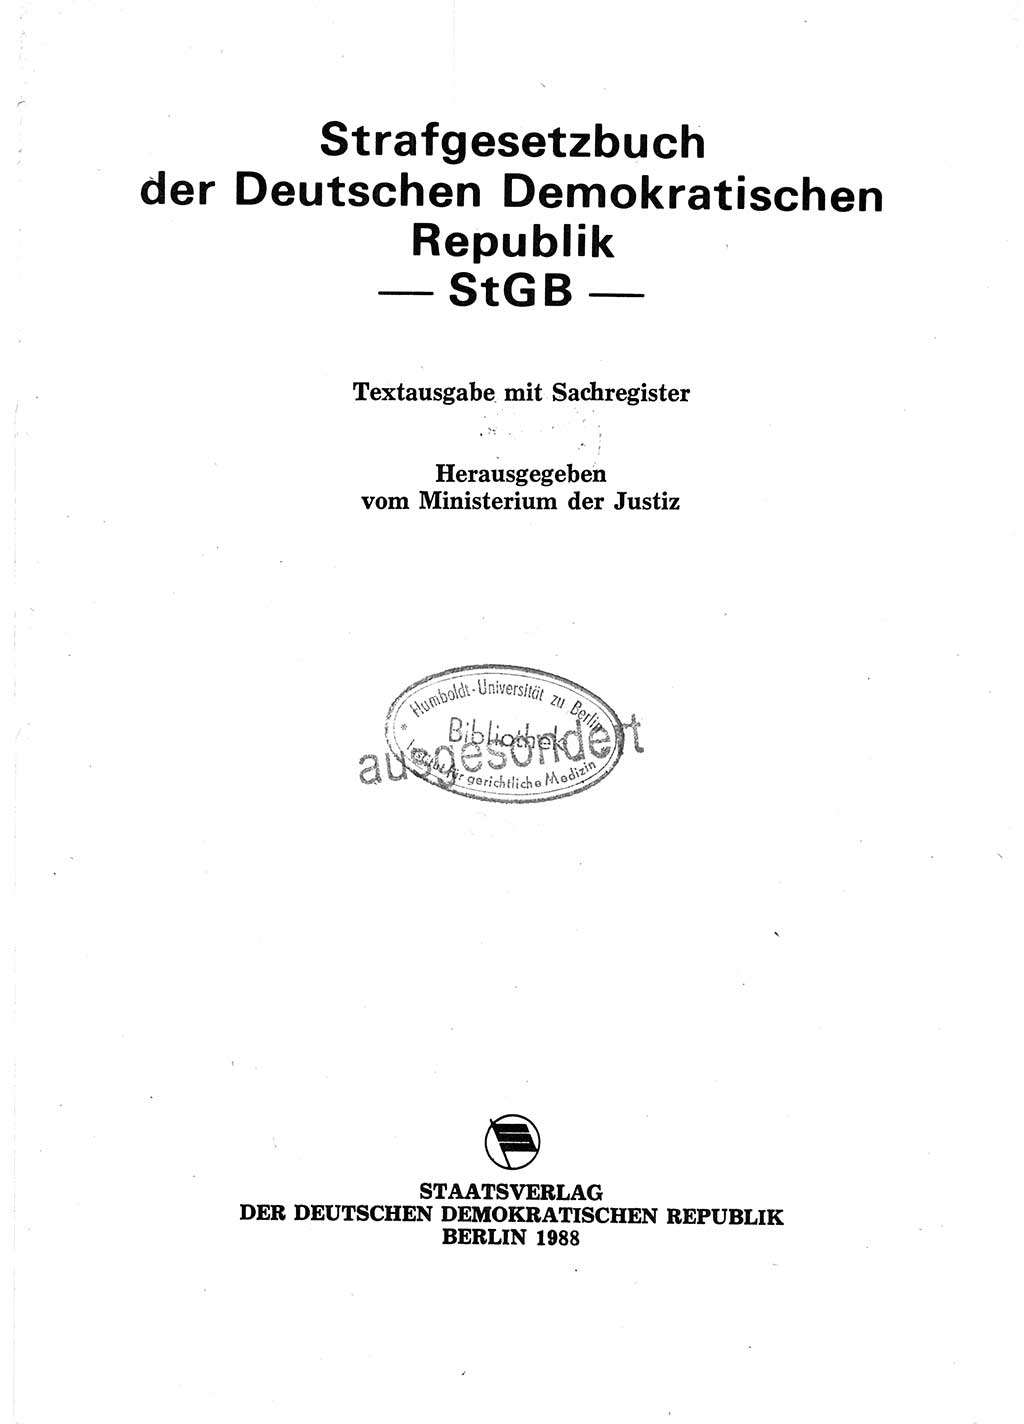 Strafgesetzbuch (StGB) der Deutschen Demokratischen Republik (DDR) 1987, Seite 1 (StGB DDR 1987, S. 1)